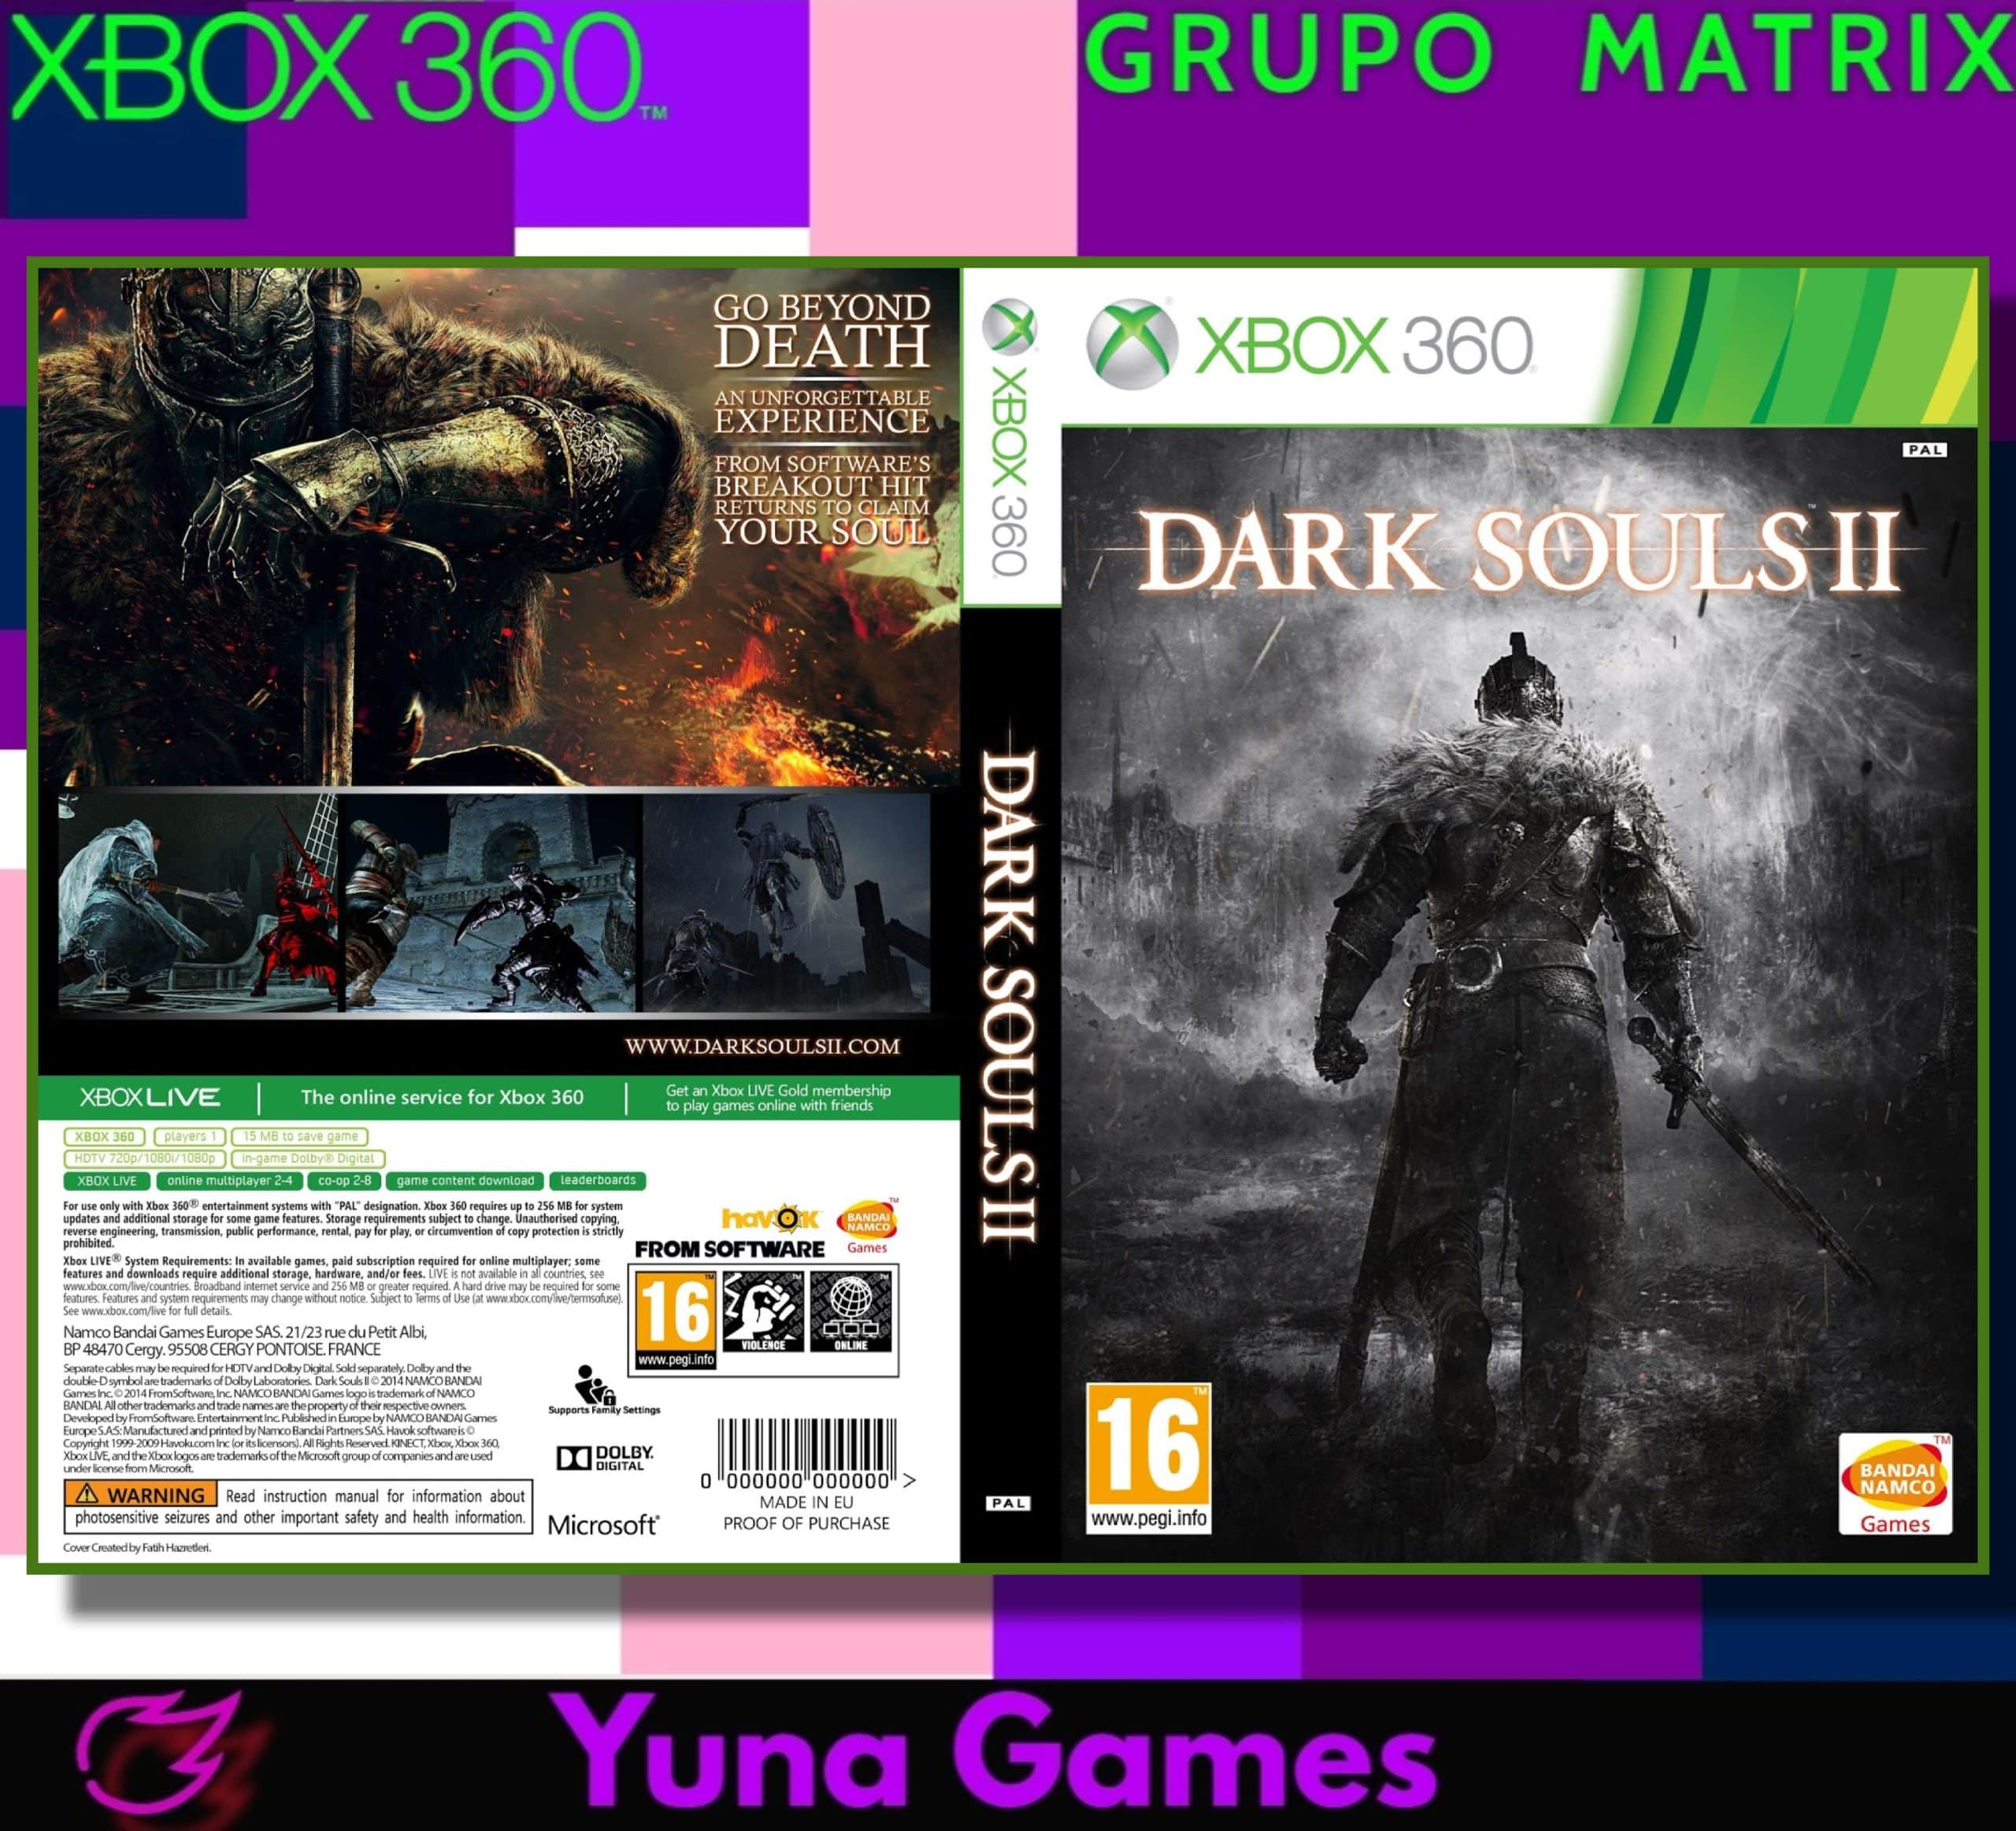 Darkgames - Xbox 360 bloqueado mais kinect, dois jogos e